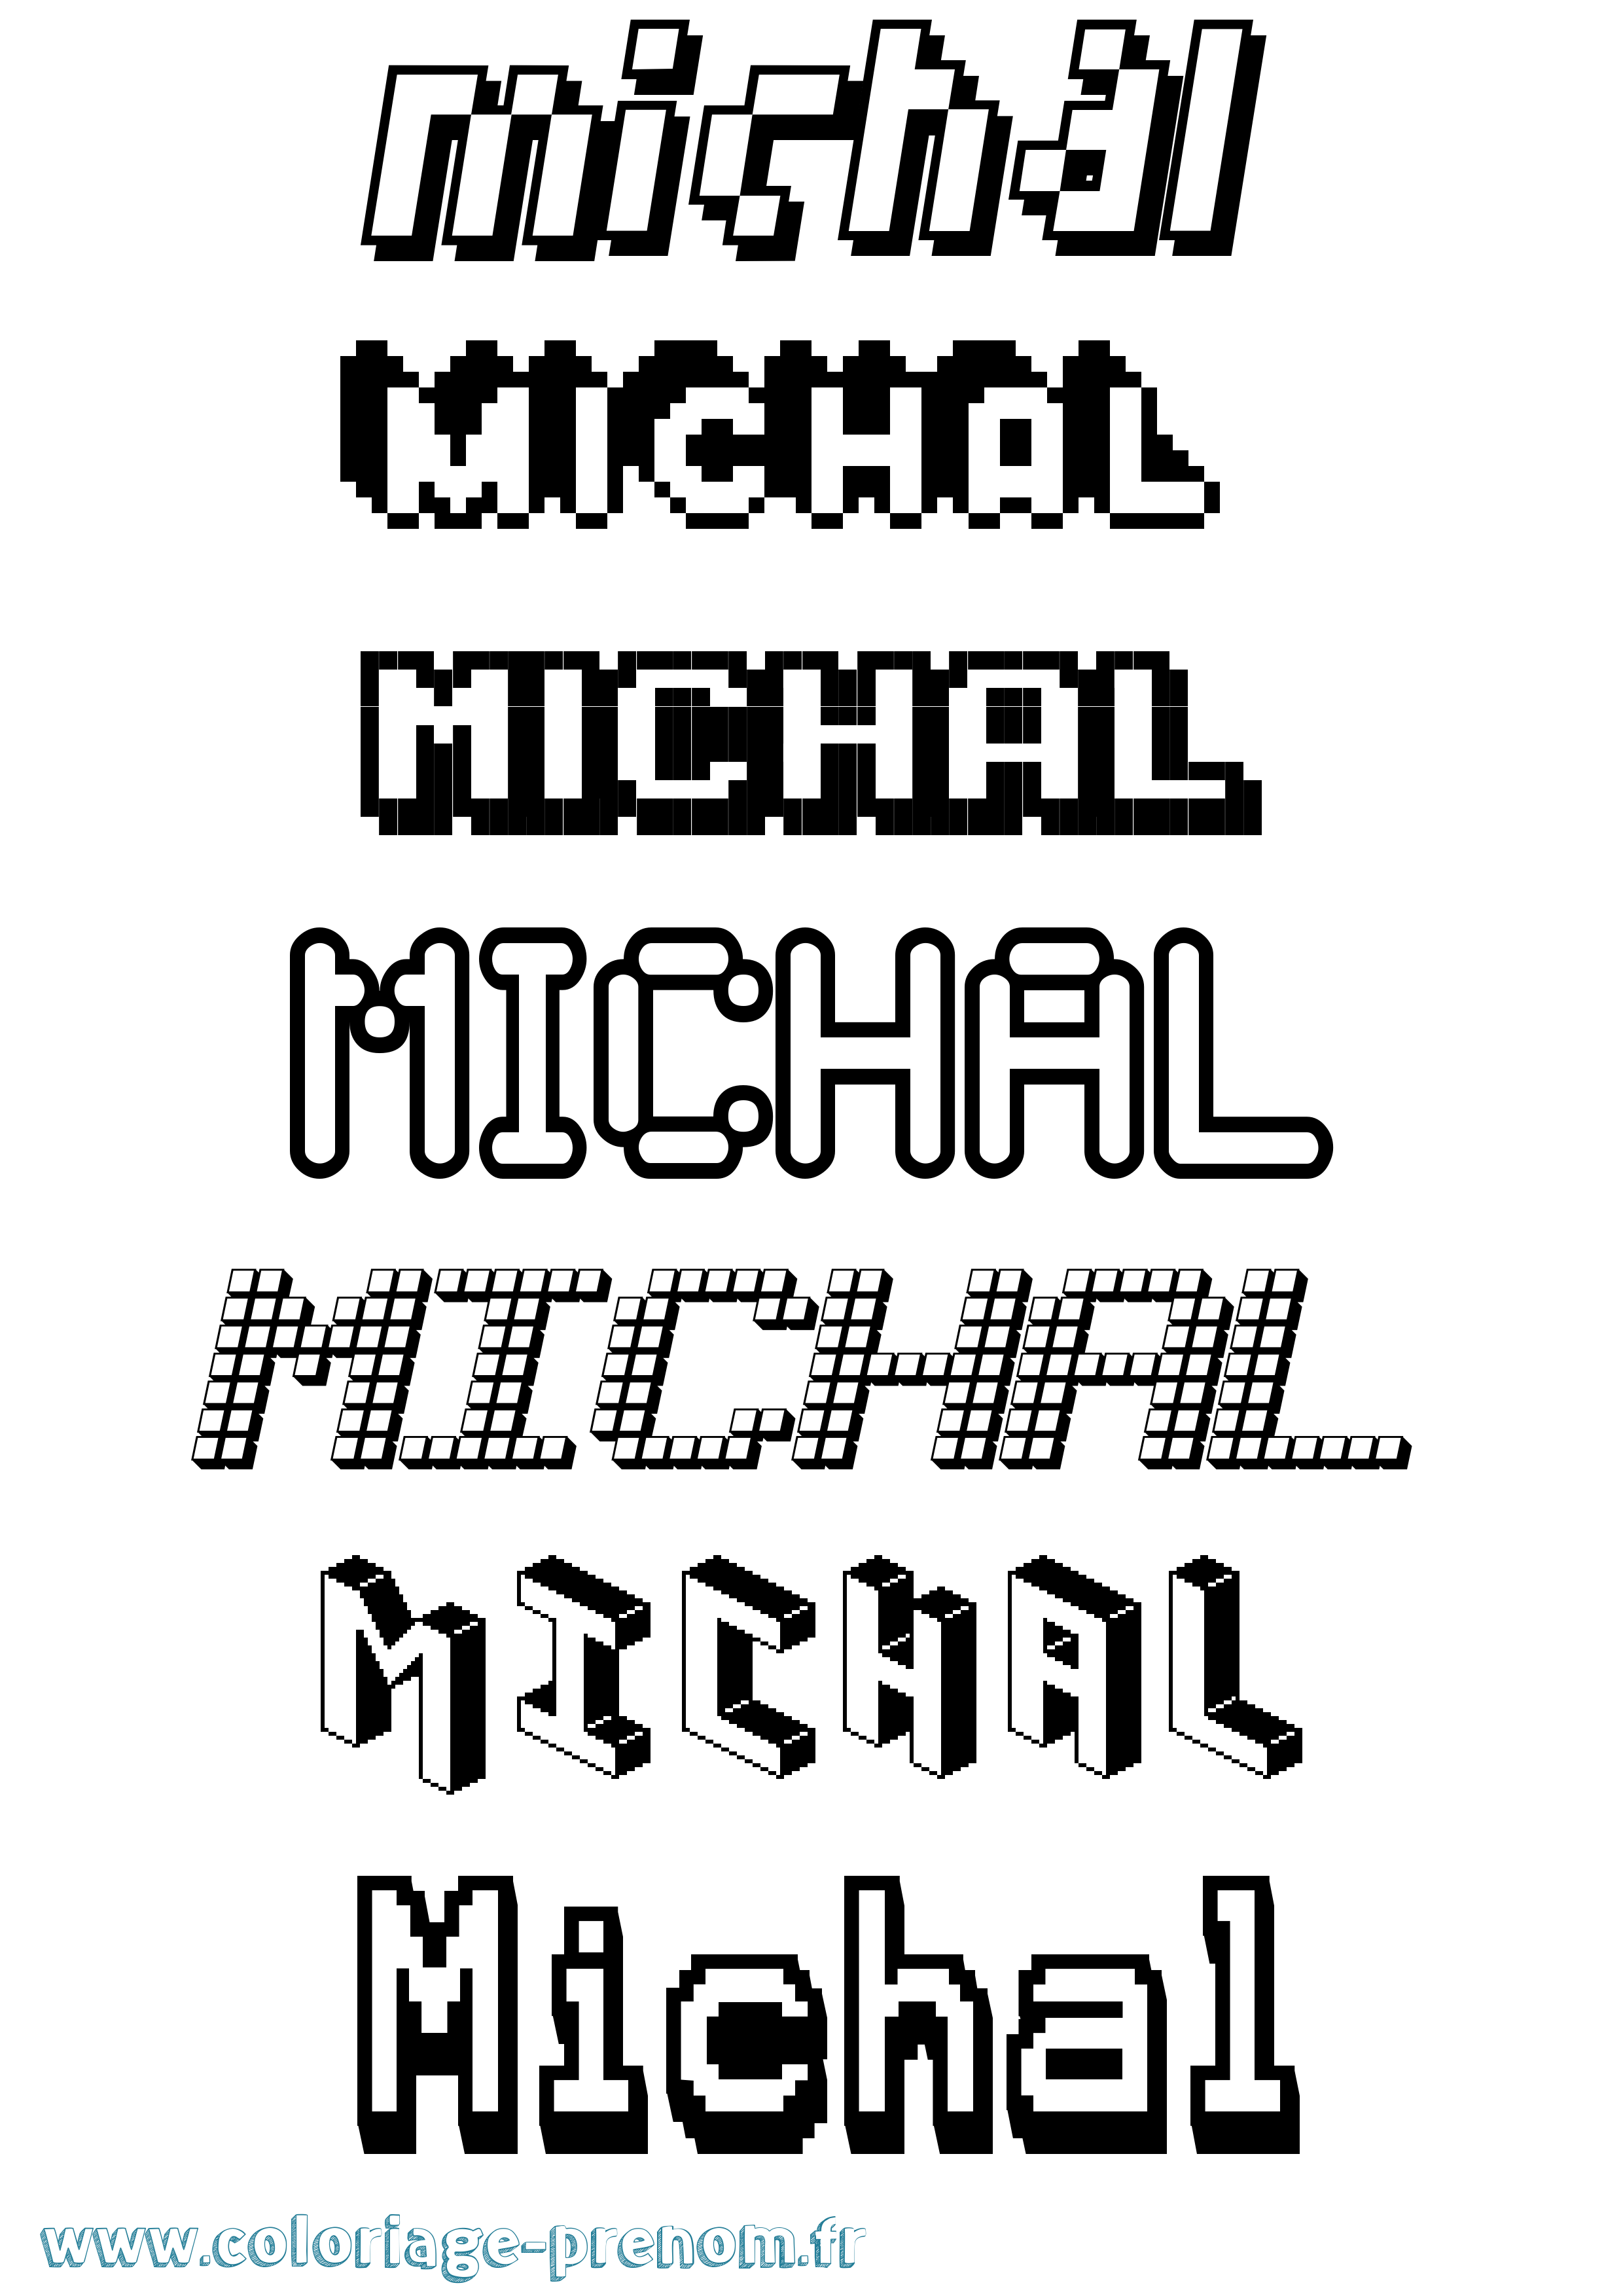 Coloriage prénom Michal Pixel